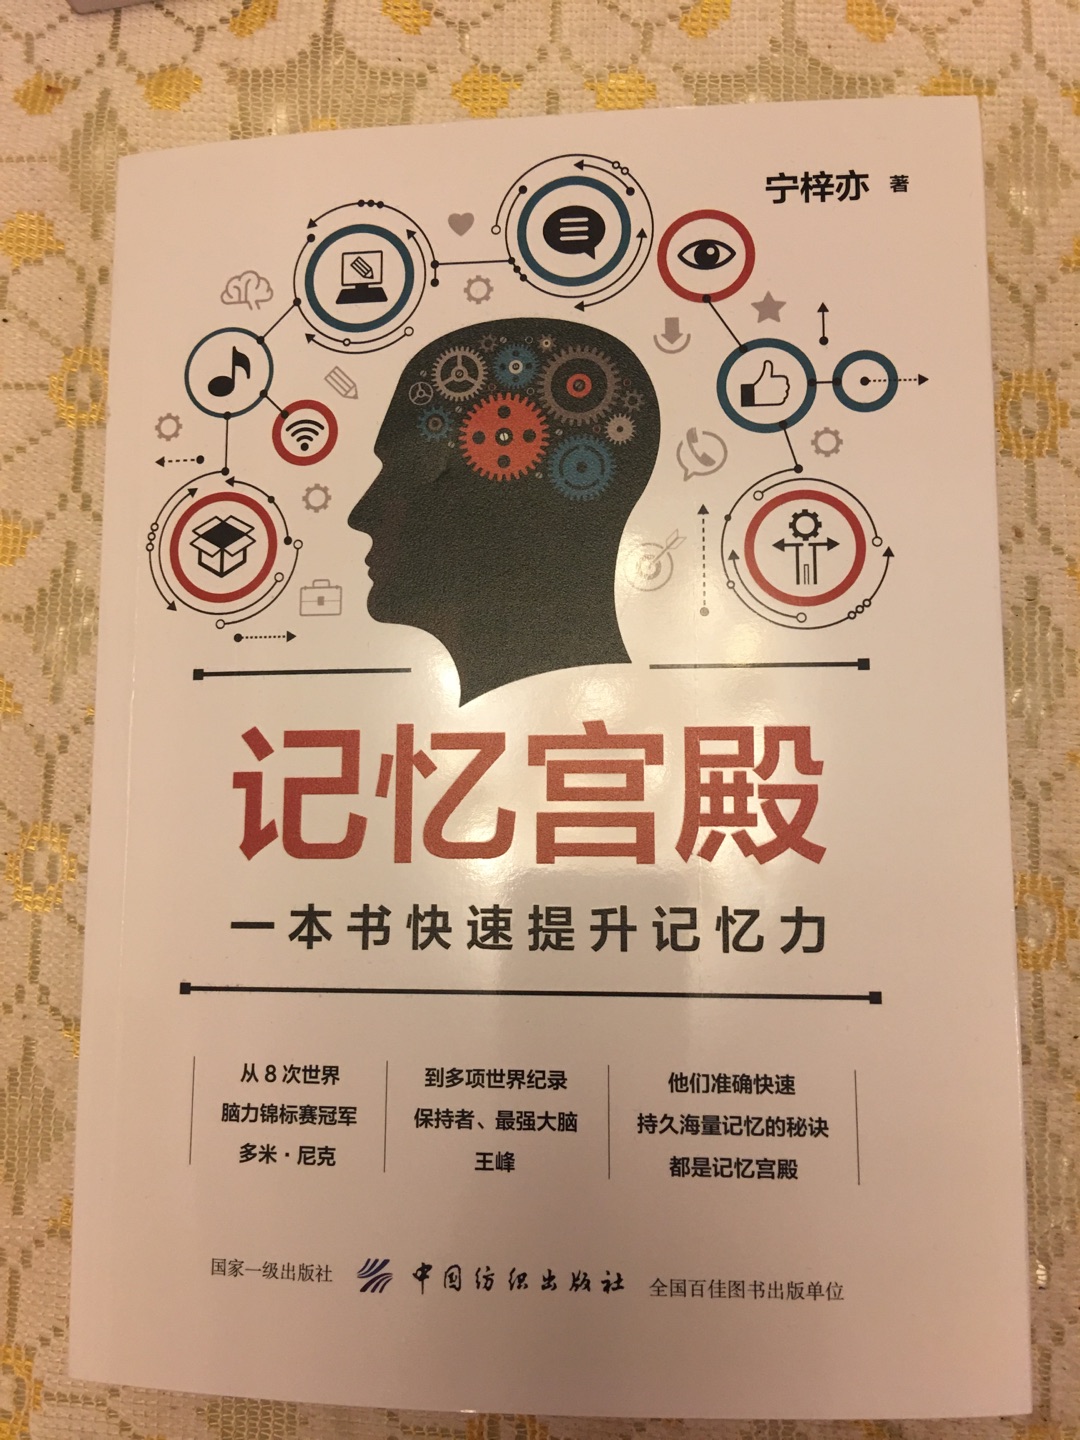 这本书比较有实际价值，并且是多米尼克，王峰推荐的。